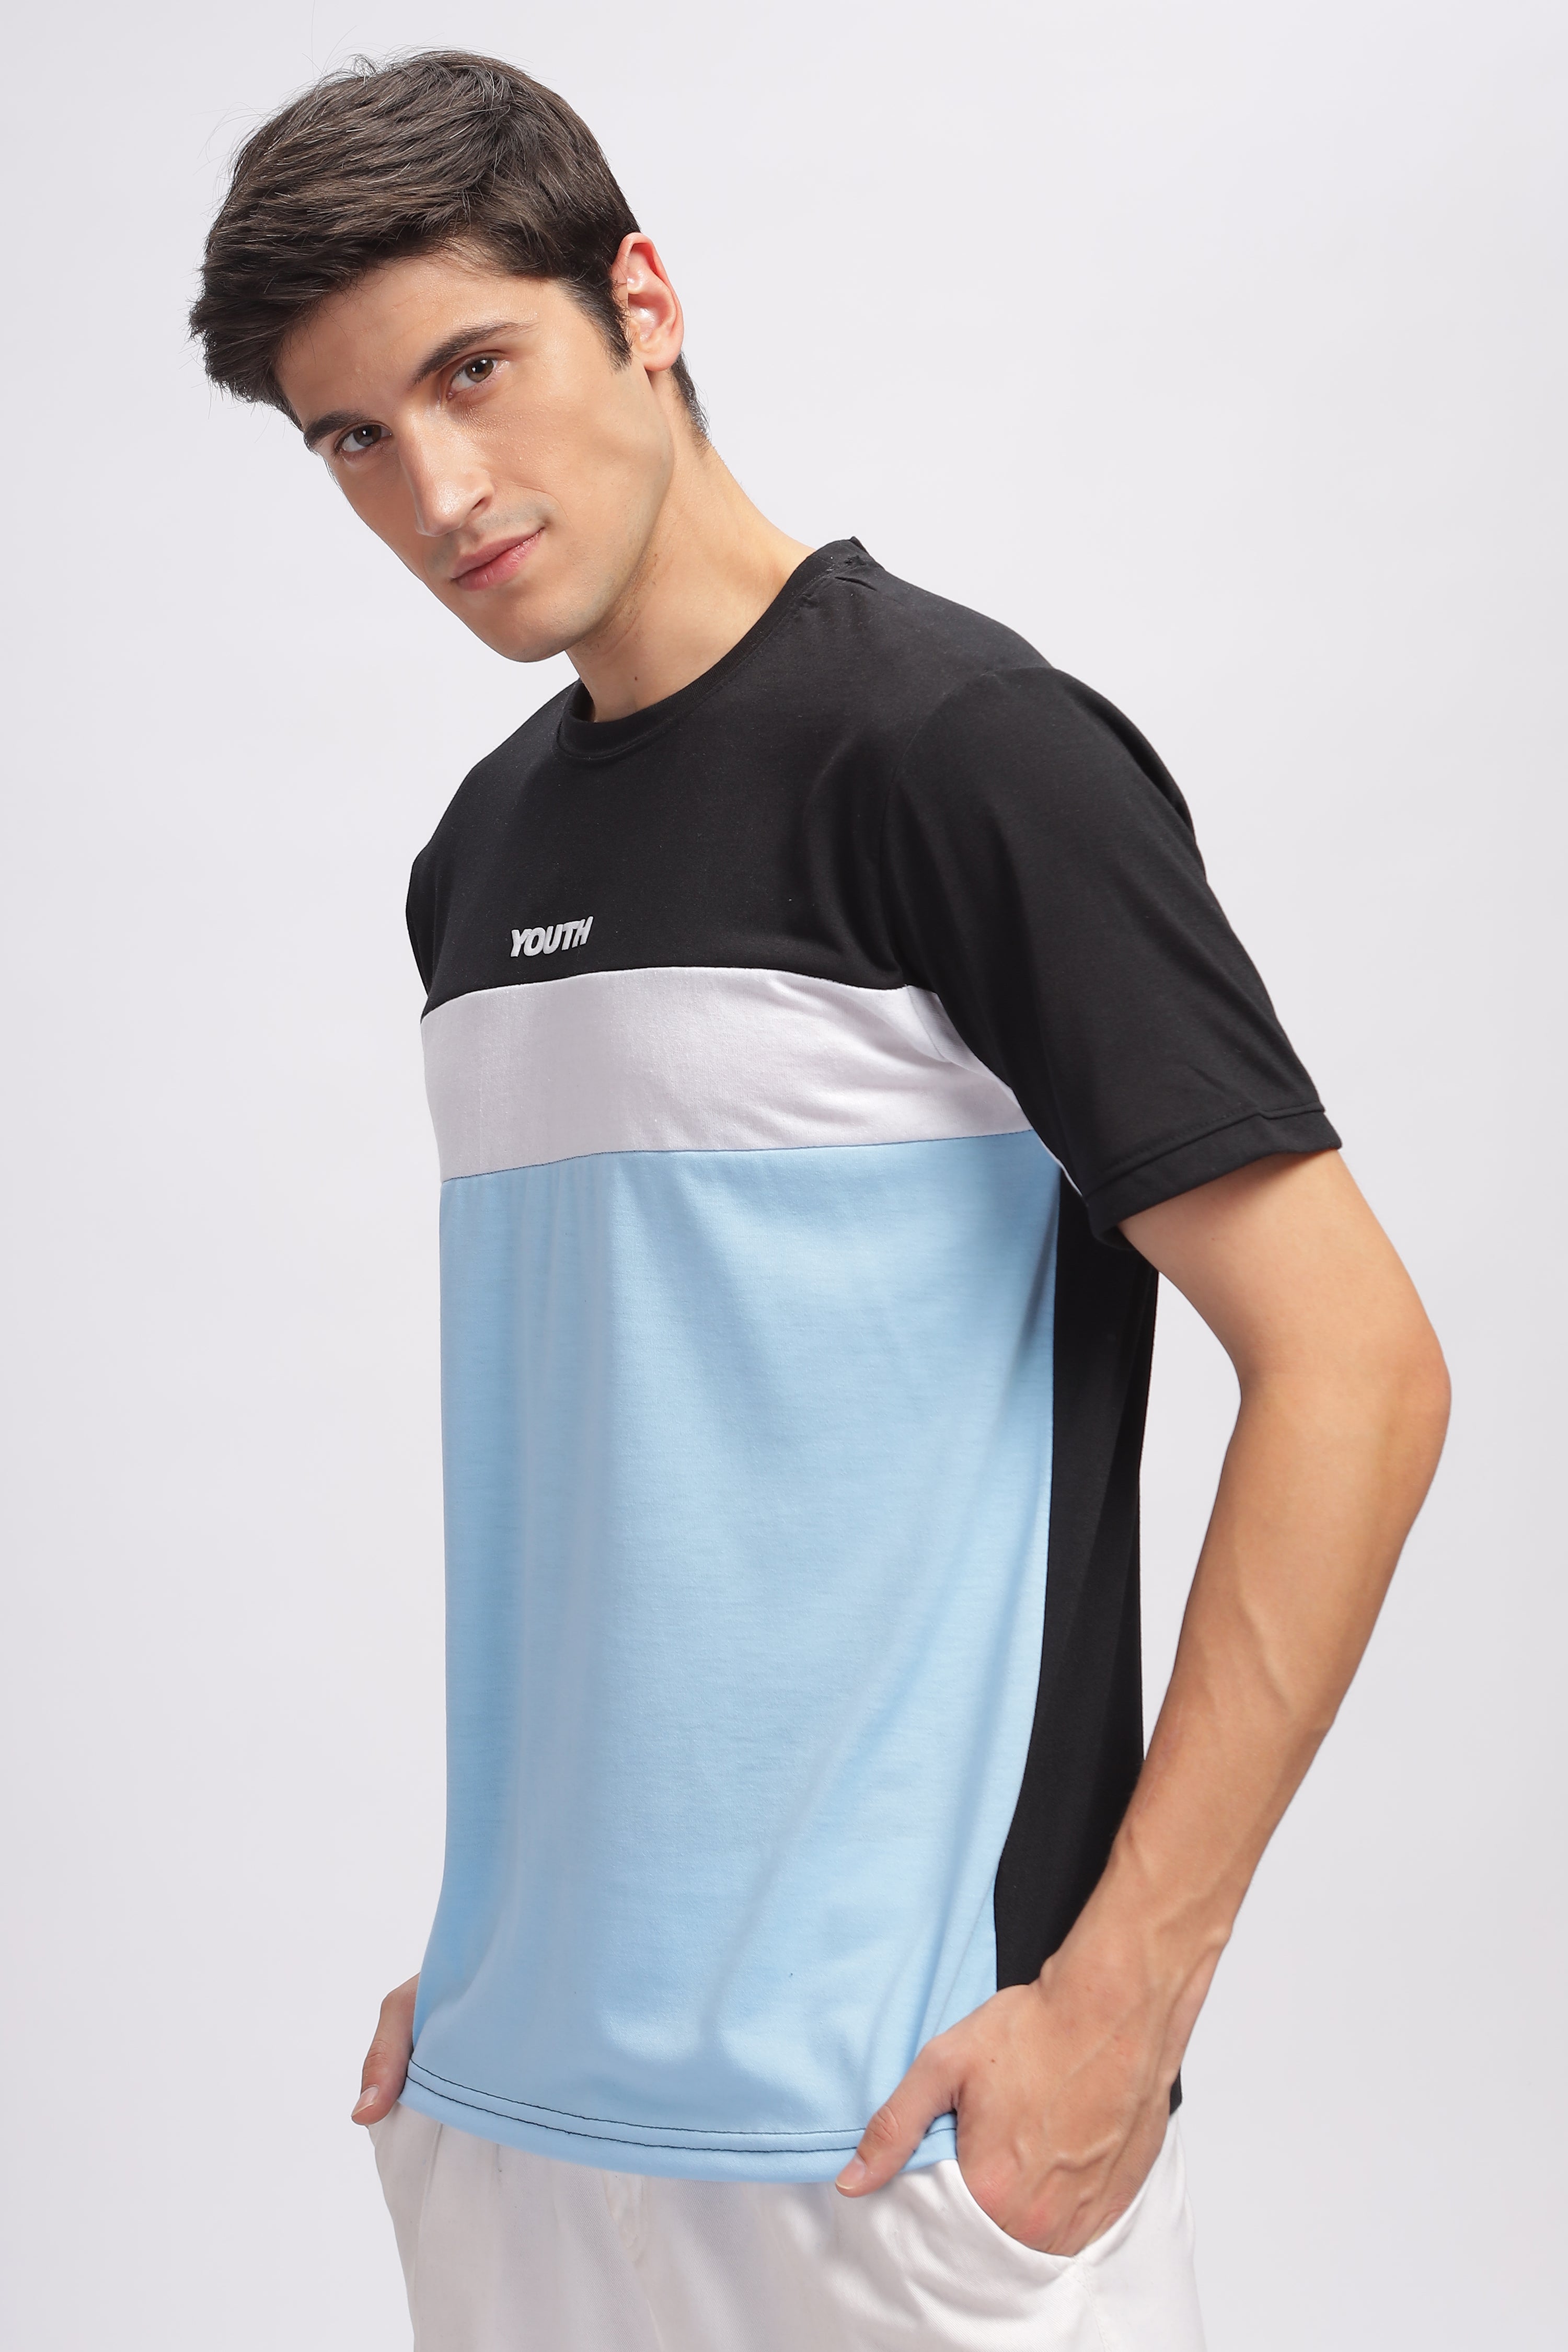 Black & Blue "Youth" Color Block Cotton T-Shirt